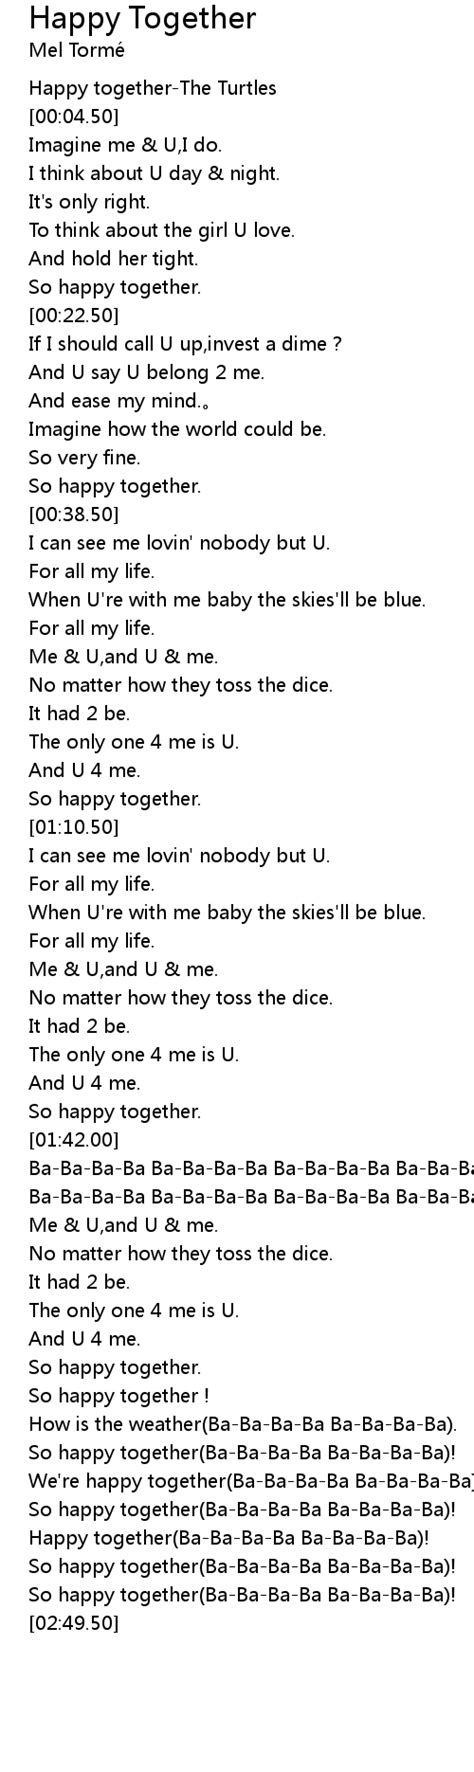 Happy Together Lyrics Follow Lyrics